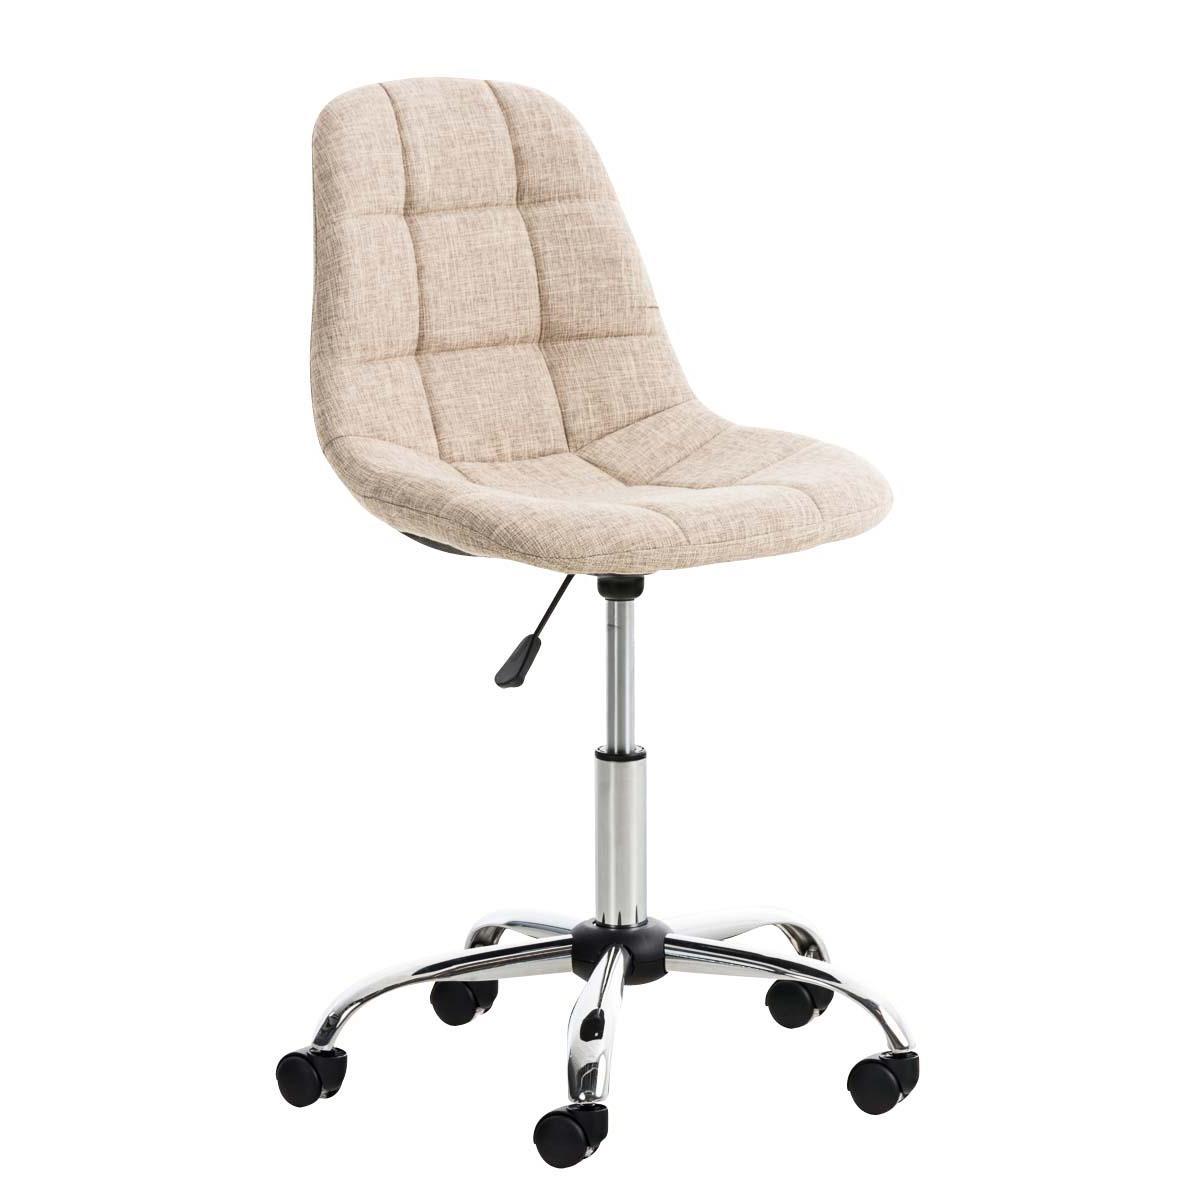 Chaise de bureau EMILY, Structure métallique, Design exclusif, revêtement Tissu, Crème